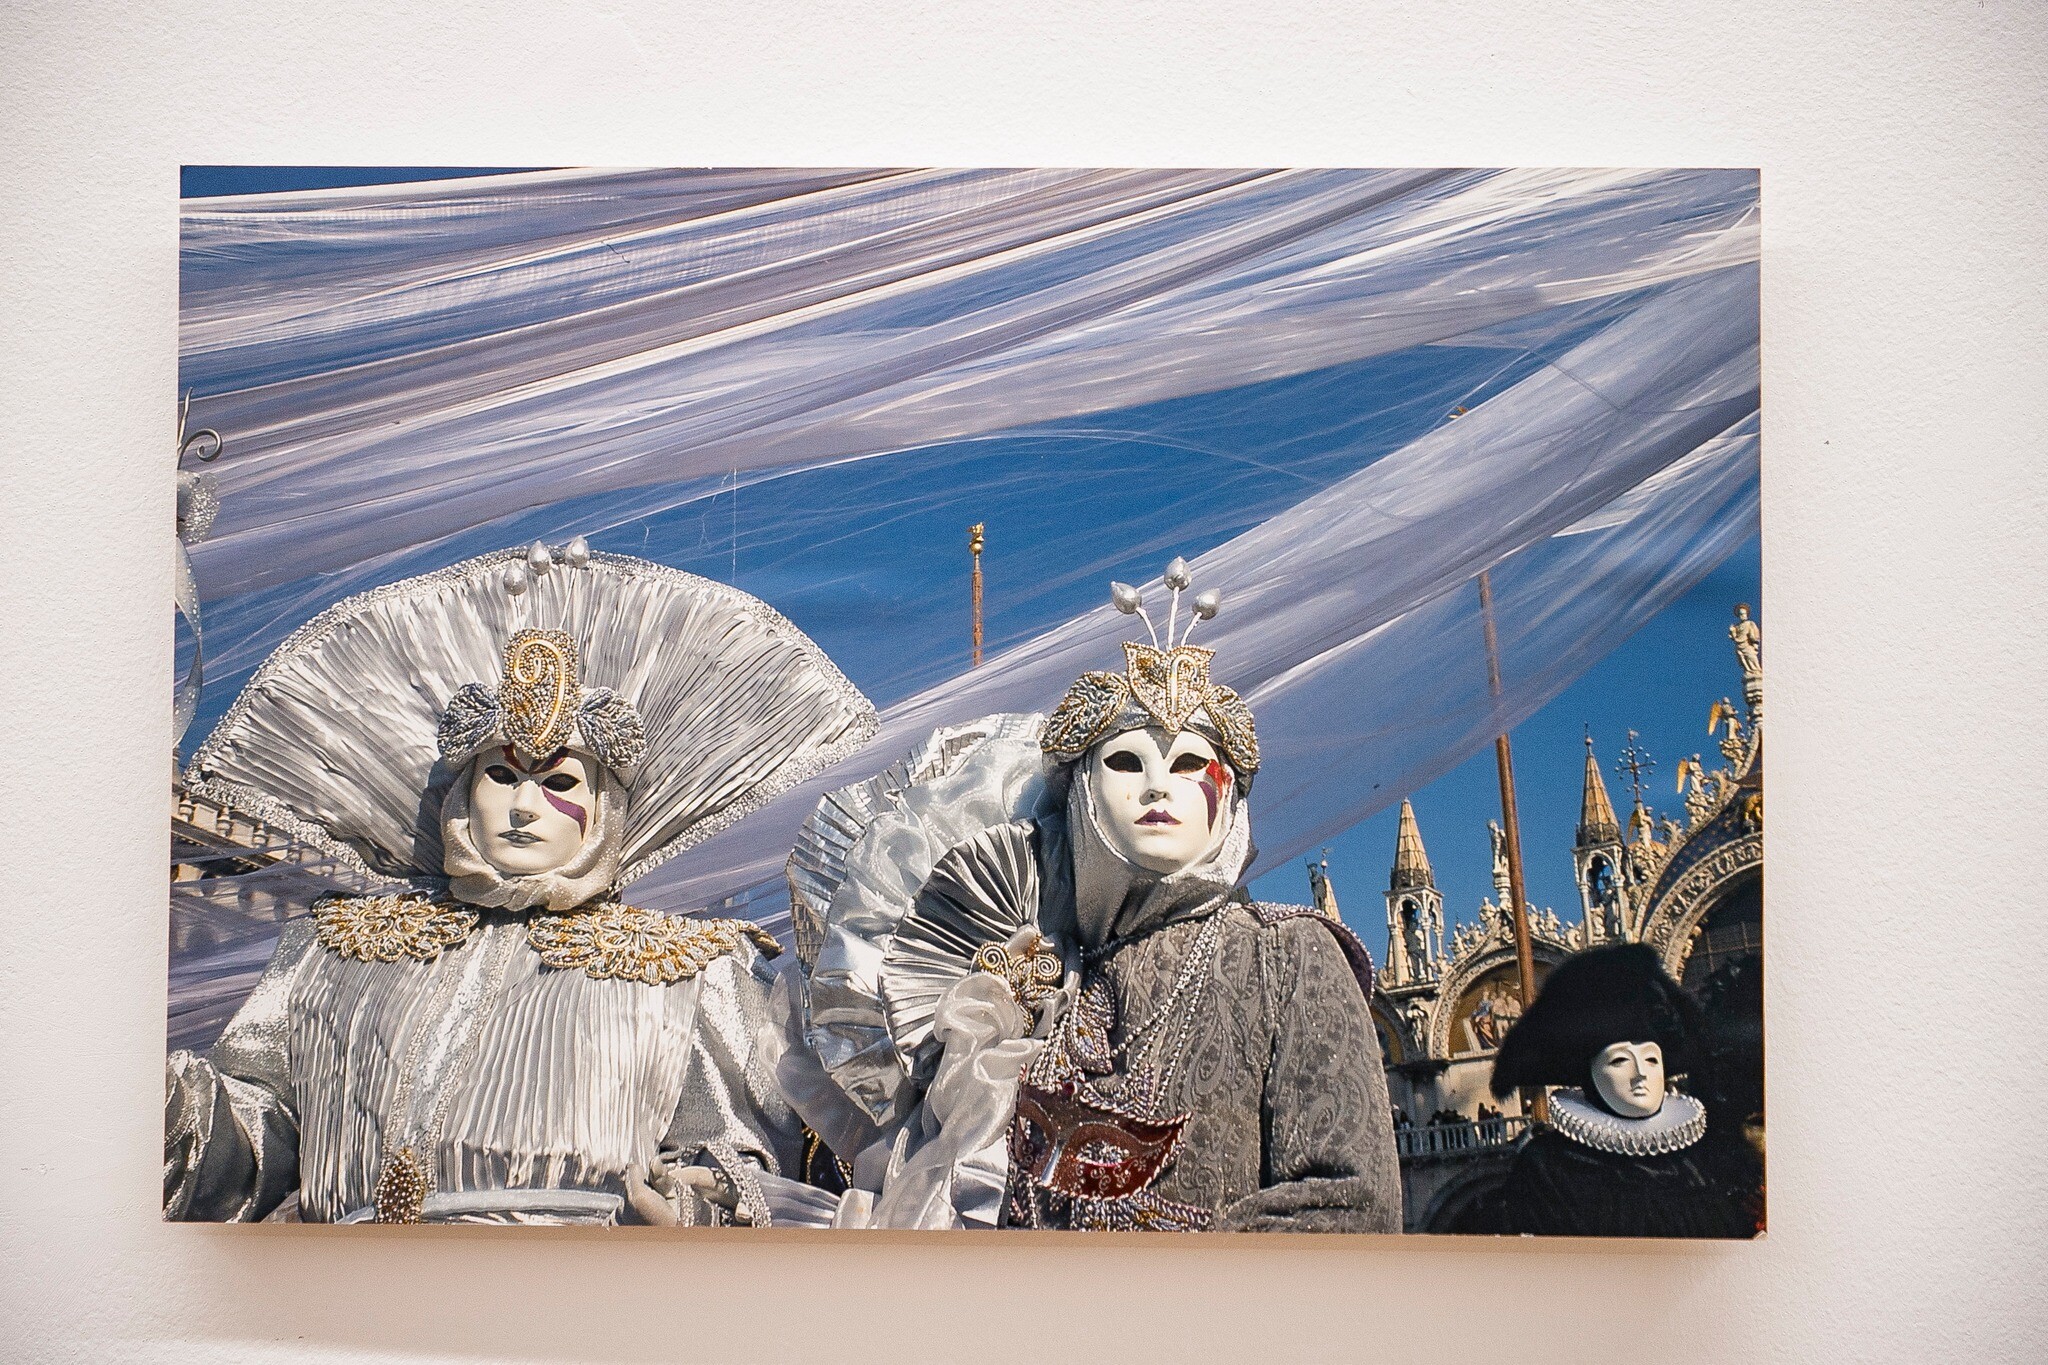 Exposição “Veneza: Máscaras de Sedução”